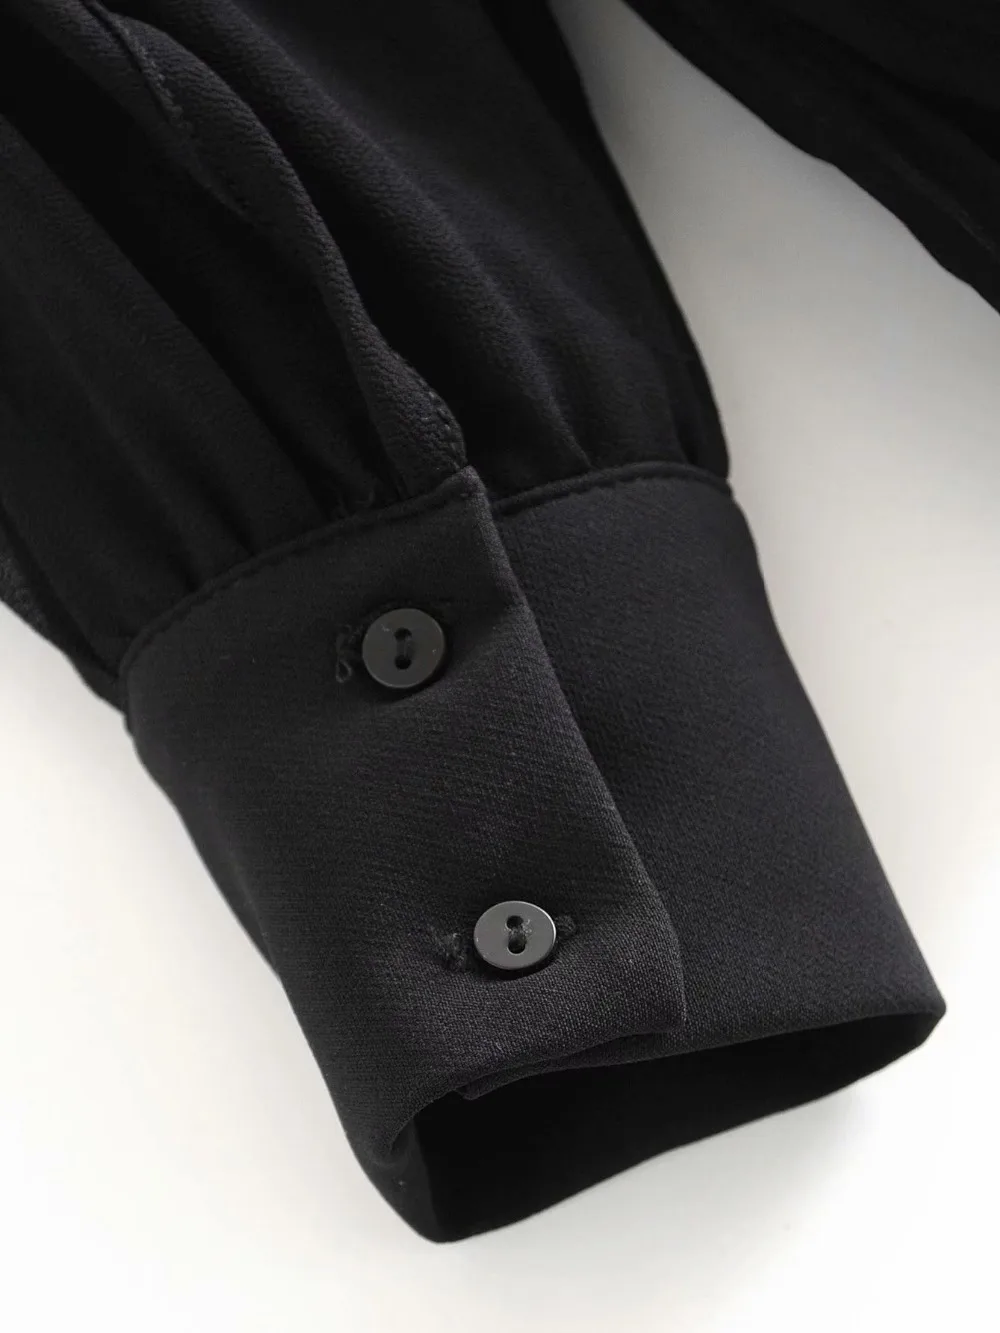 Женская элегантная винтажная черная плиссированная шифоновая блузка с бантом, милые женские сексуальные полупрозрачные летние топы с длинным рукавом и квадратным вырезом